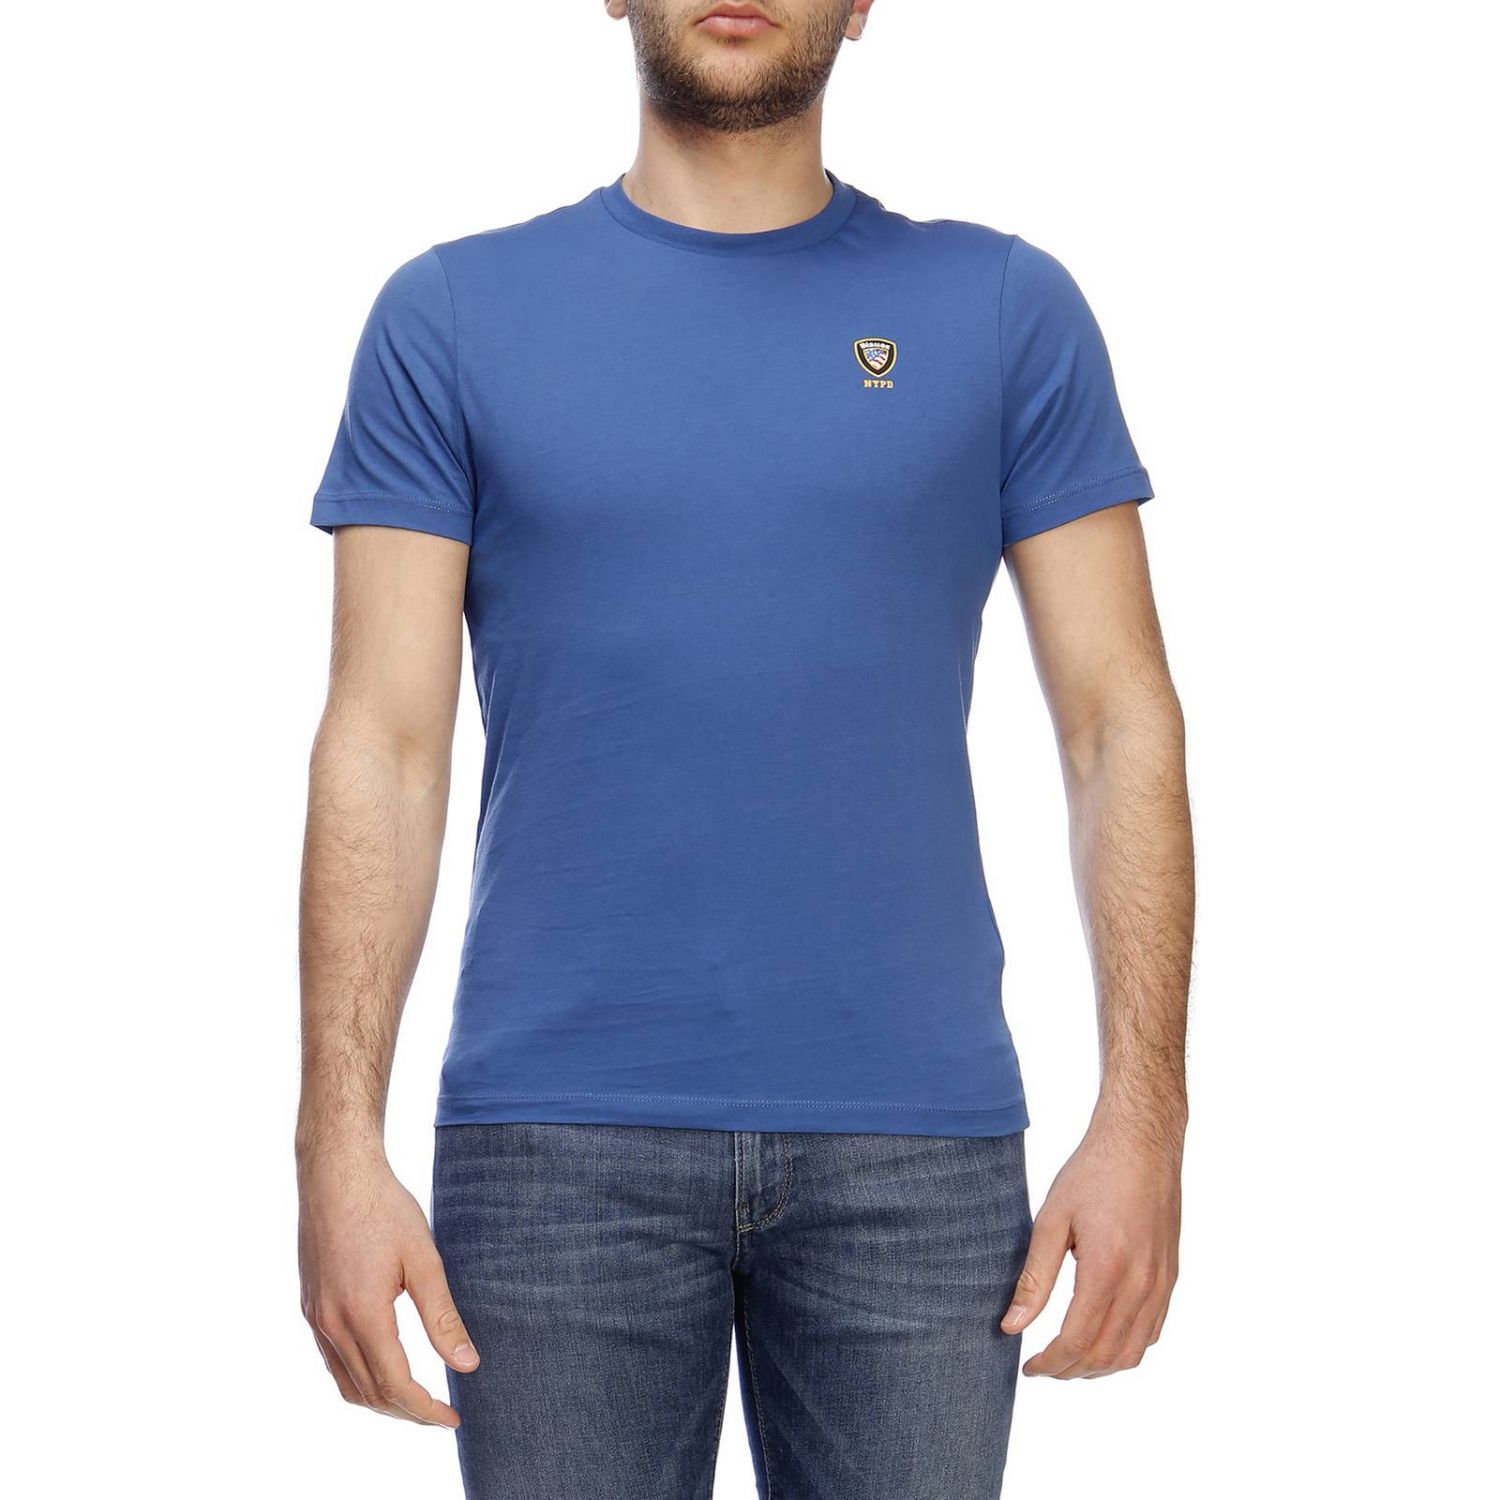 Blauer Outlet: T-shirt men | T-Shirt Blauer Men Blue 1 | T-Shirt Blauer ...